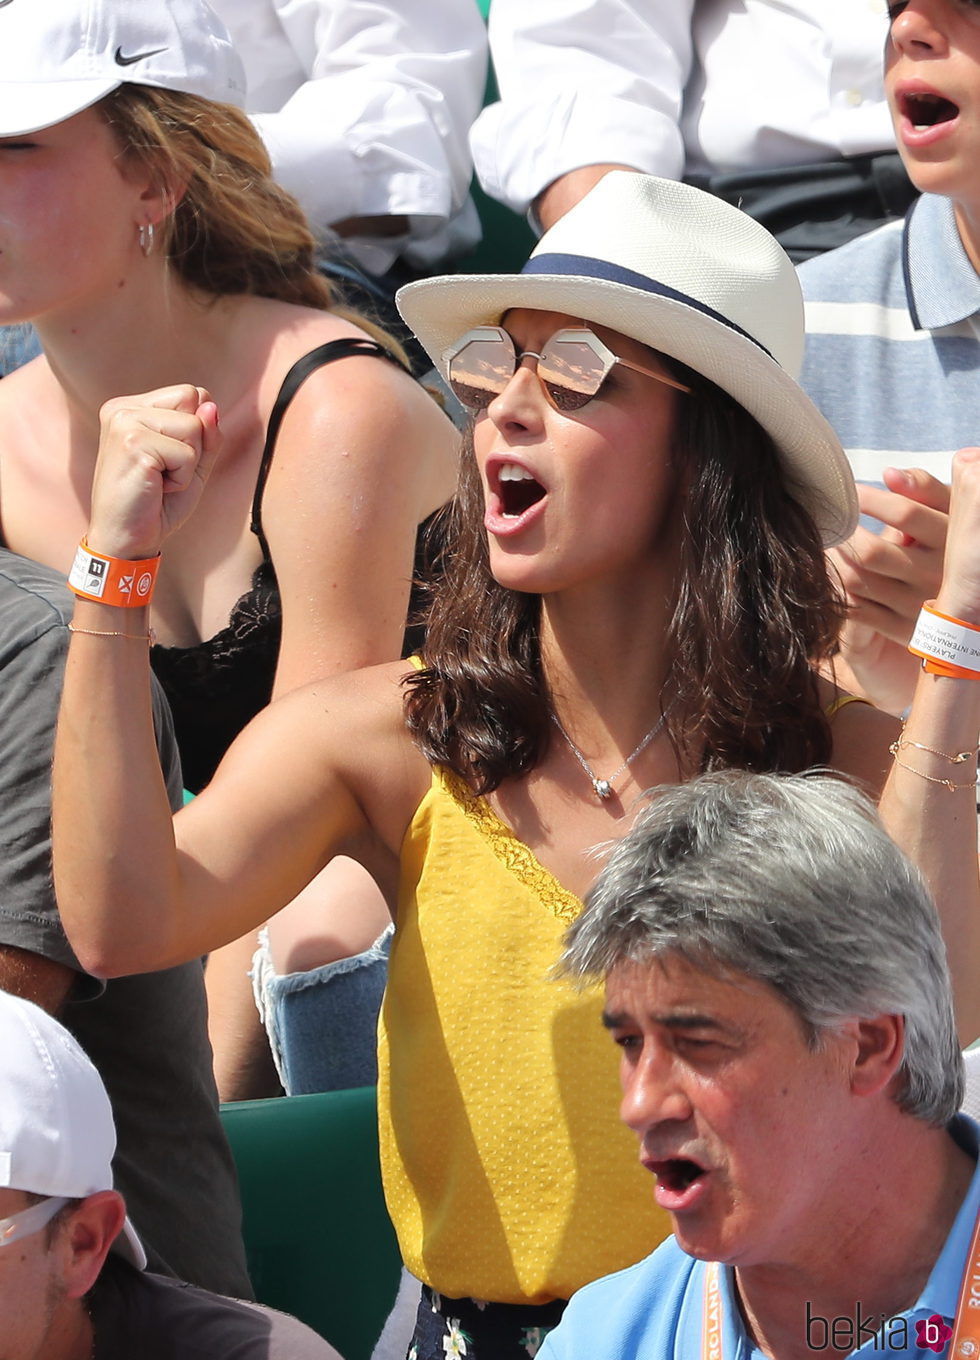 Xisca Perelló celebrando la victoria de Rafa Nadal en Roland Garros 2017